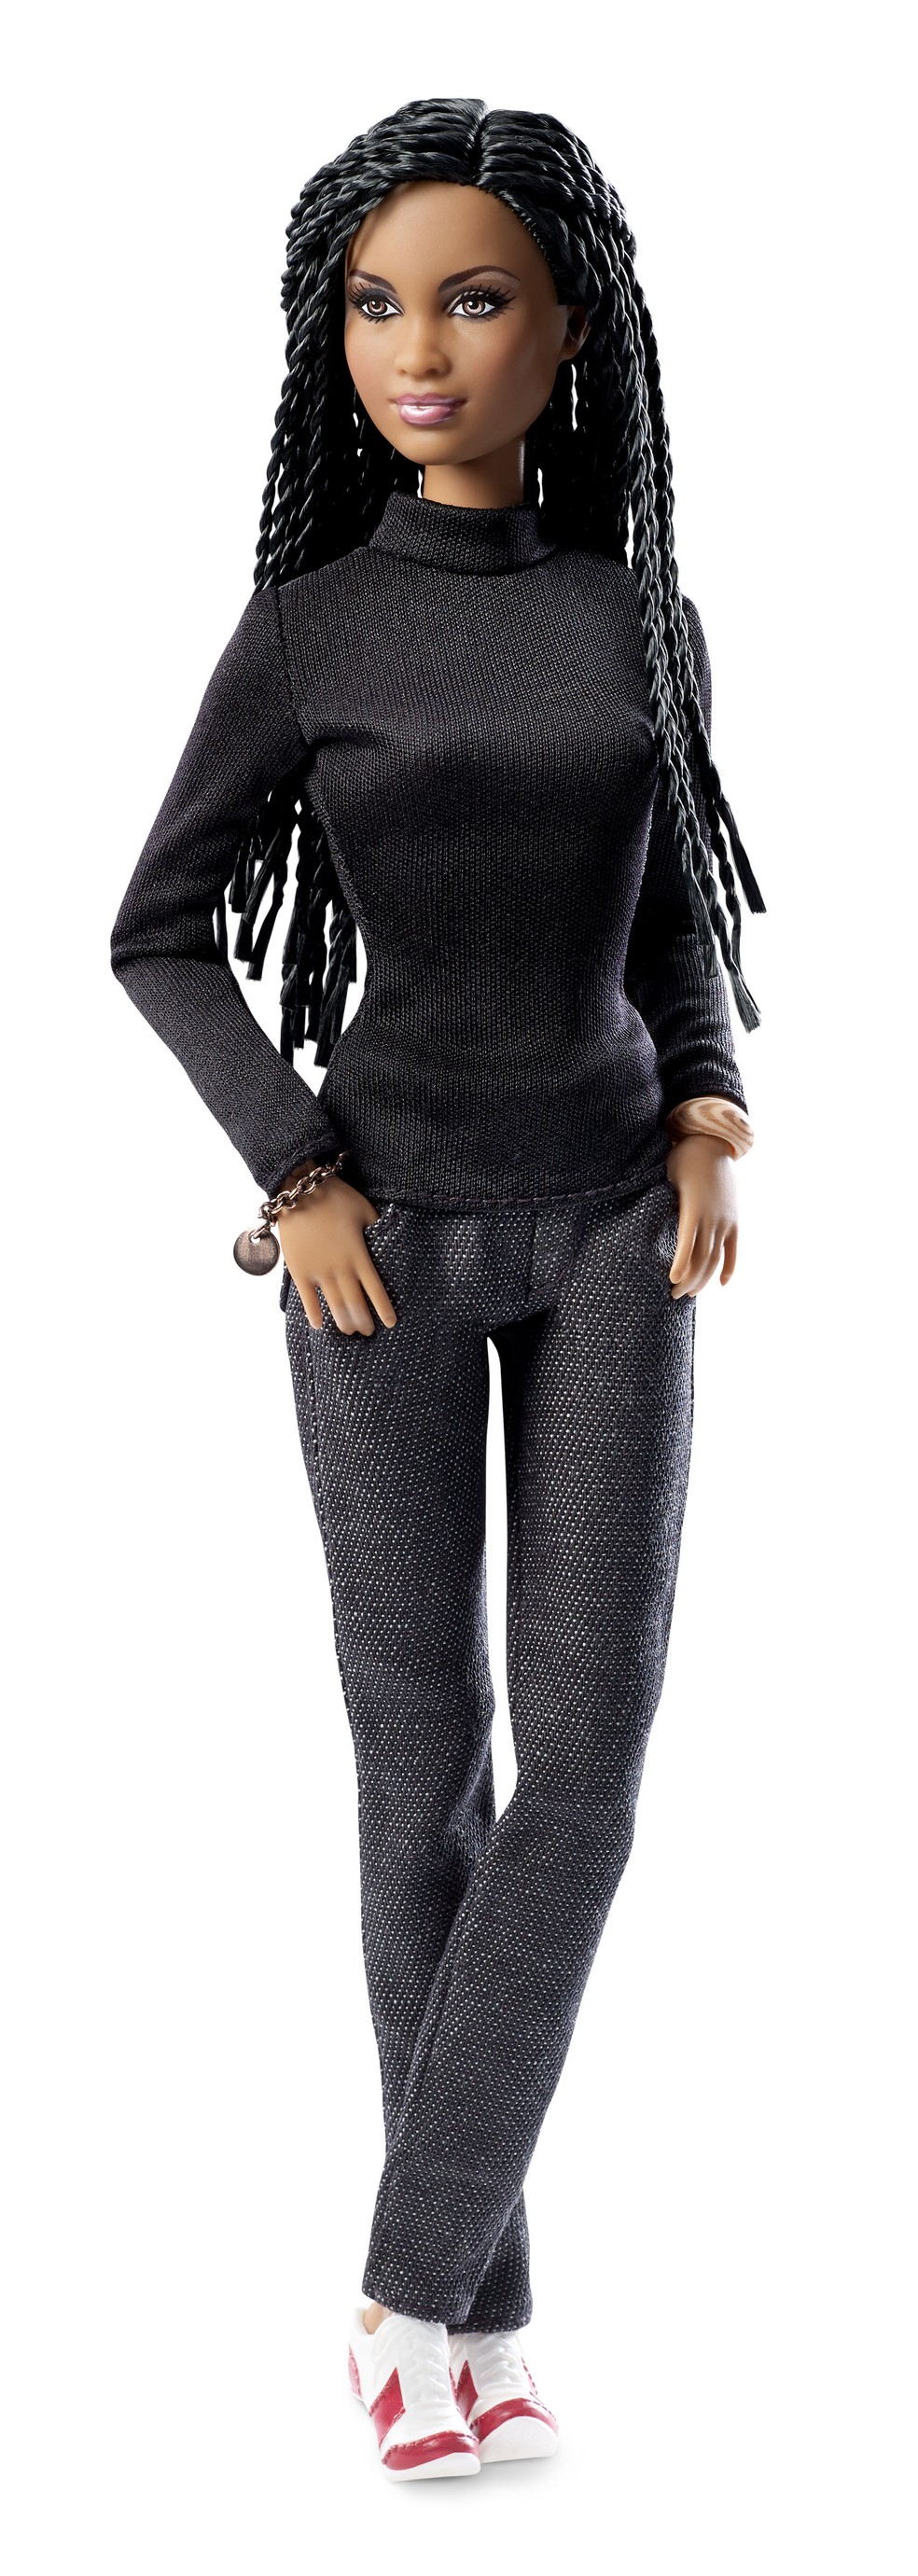 Barbie inspirada em Ava DuVernay, fundadora de um movimento para promover oportunidades e recursos para cineastas sub-representados. — Foto: Divulgação/Mattel